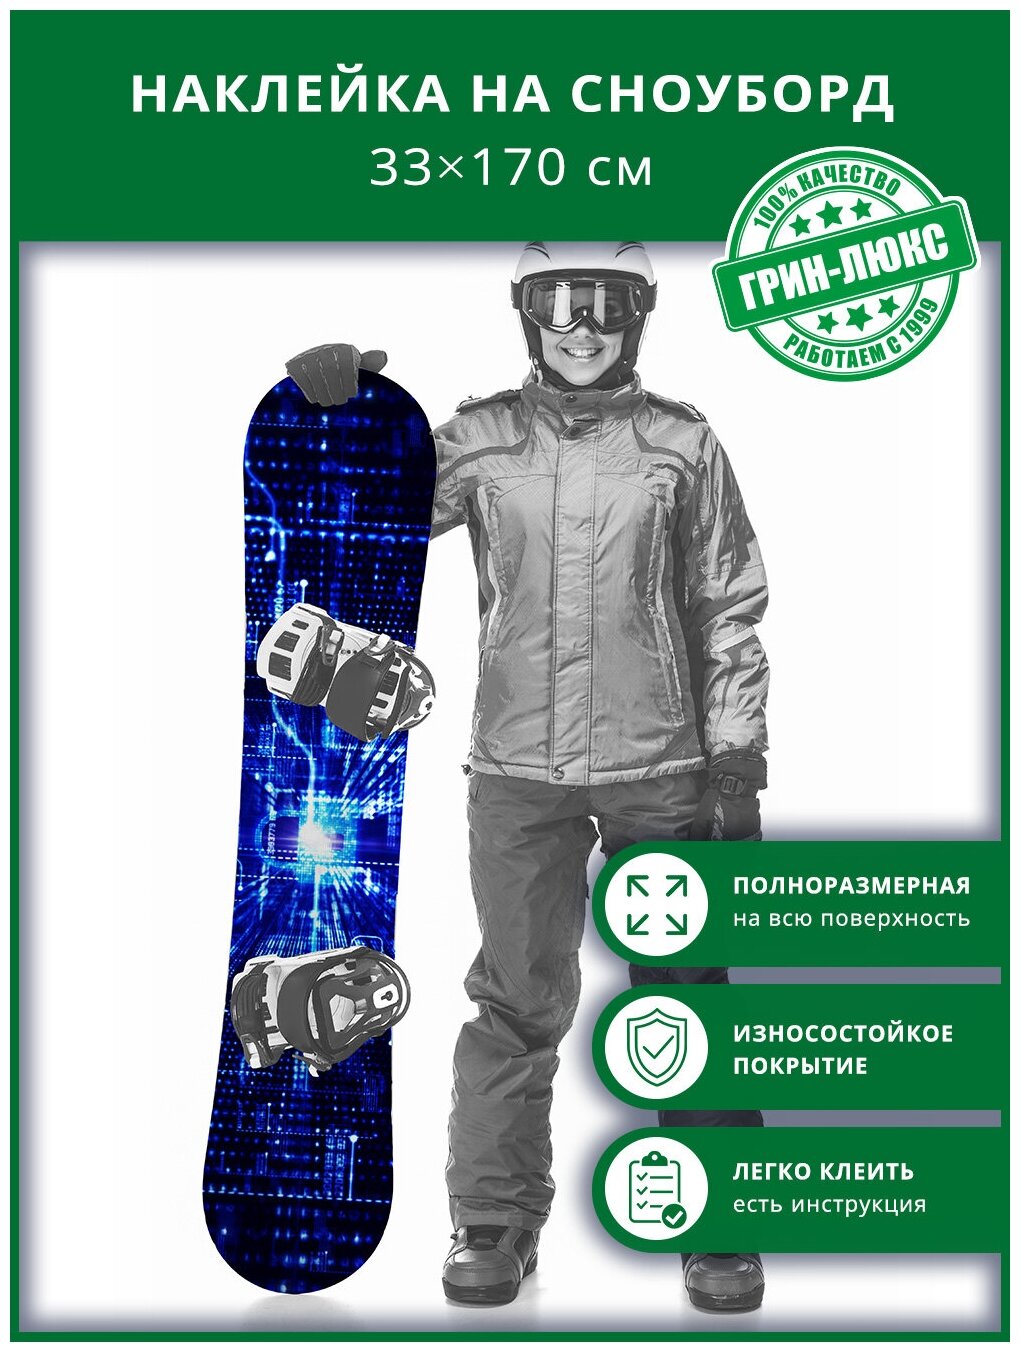 Наклейка на сноуборд с защитным глянцевым покрытием 33х170 см "Система интерфейса"